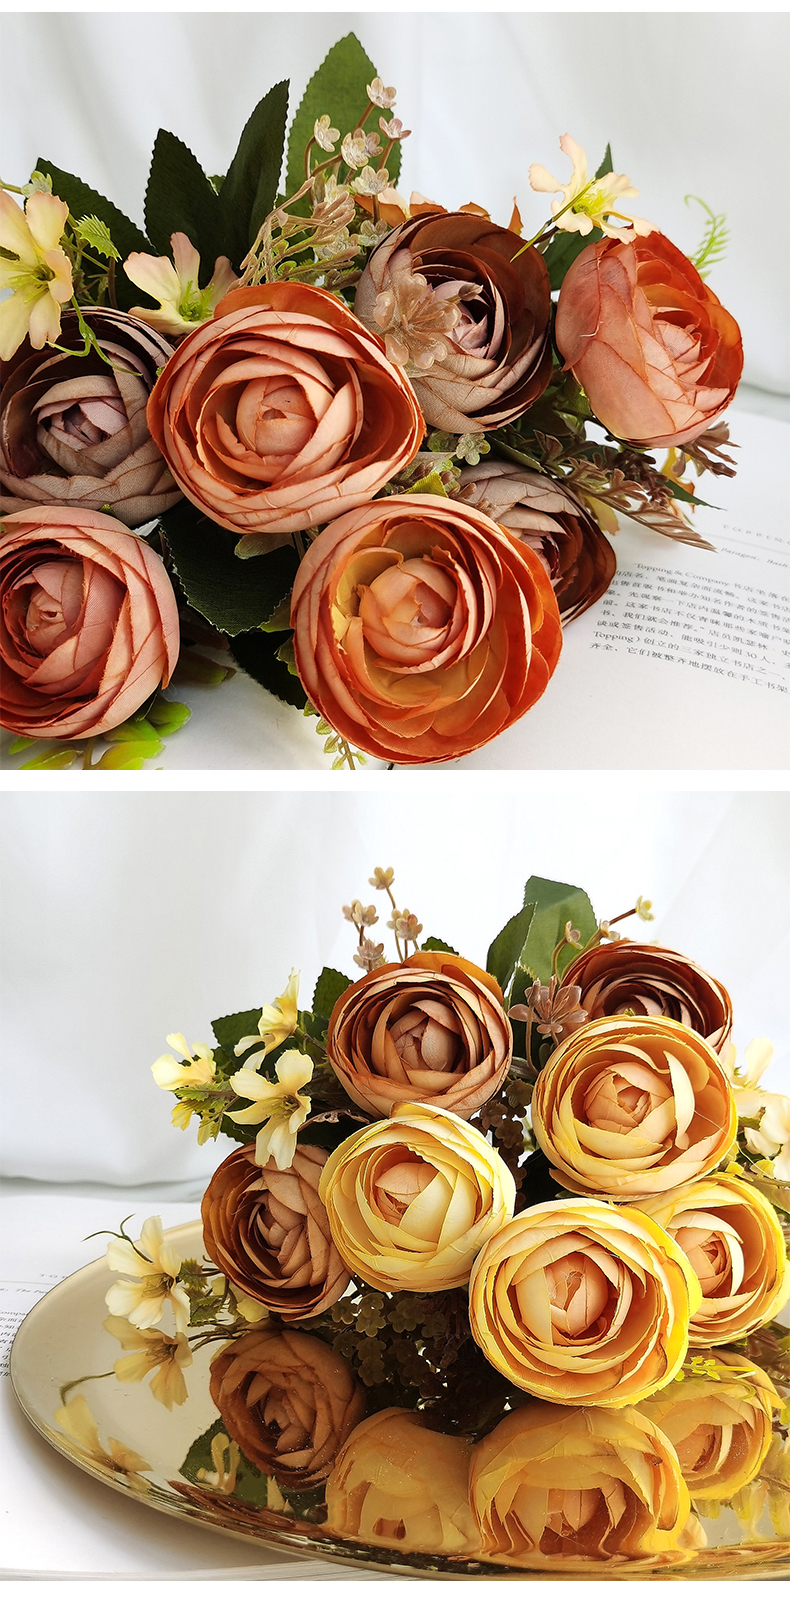 Decorative silk rose flower bouquet centerpiece flower wedding supplies artificial flowers bunch